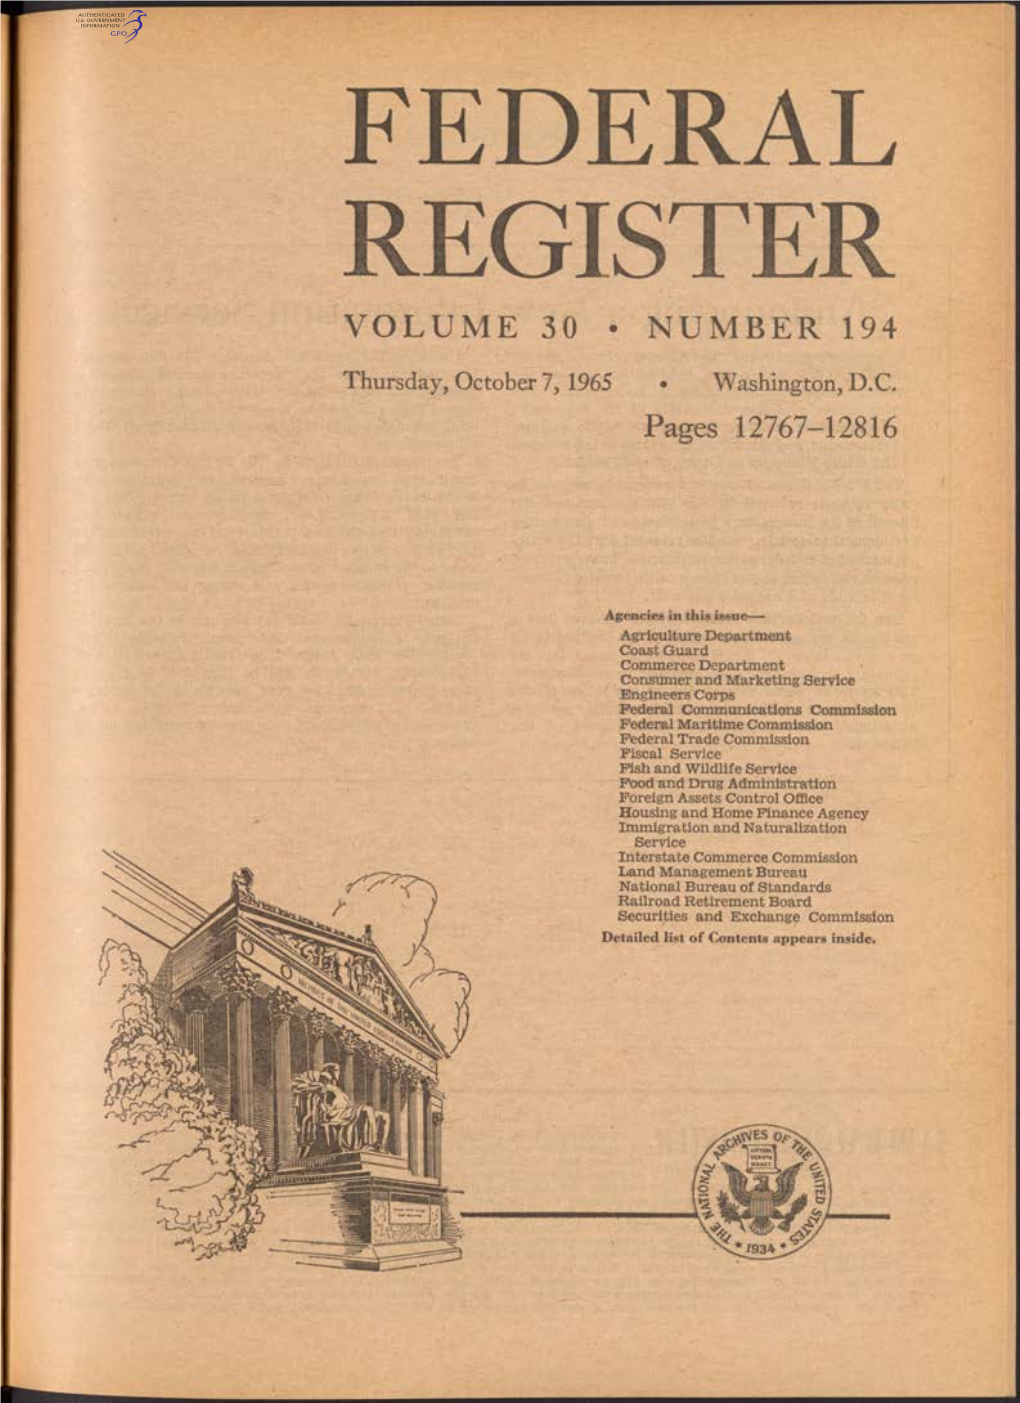 Federal Register Volume 30 • Number 194